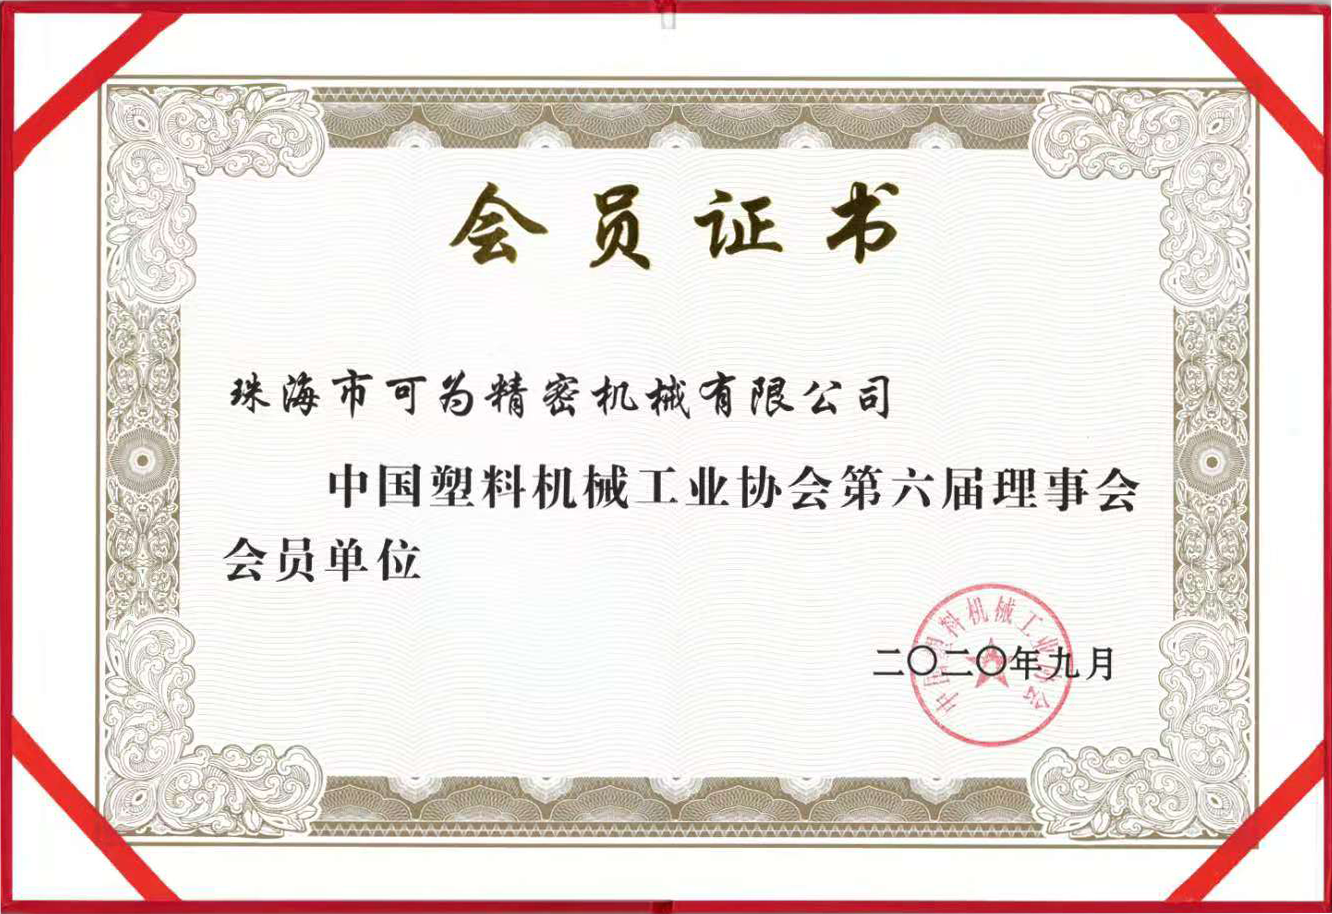 中國塑料機械工業協會第六屆理事會會員單位證書